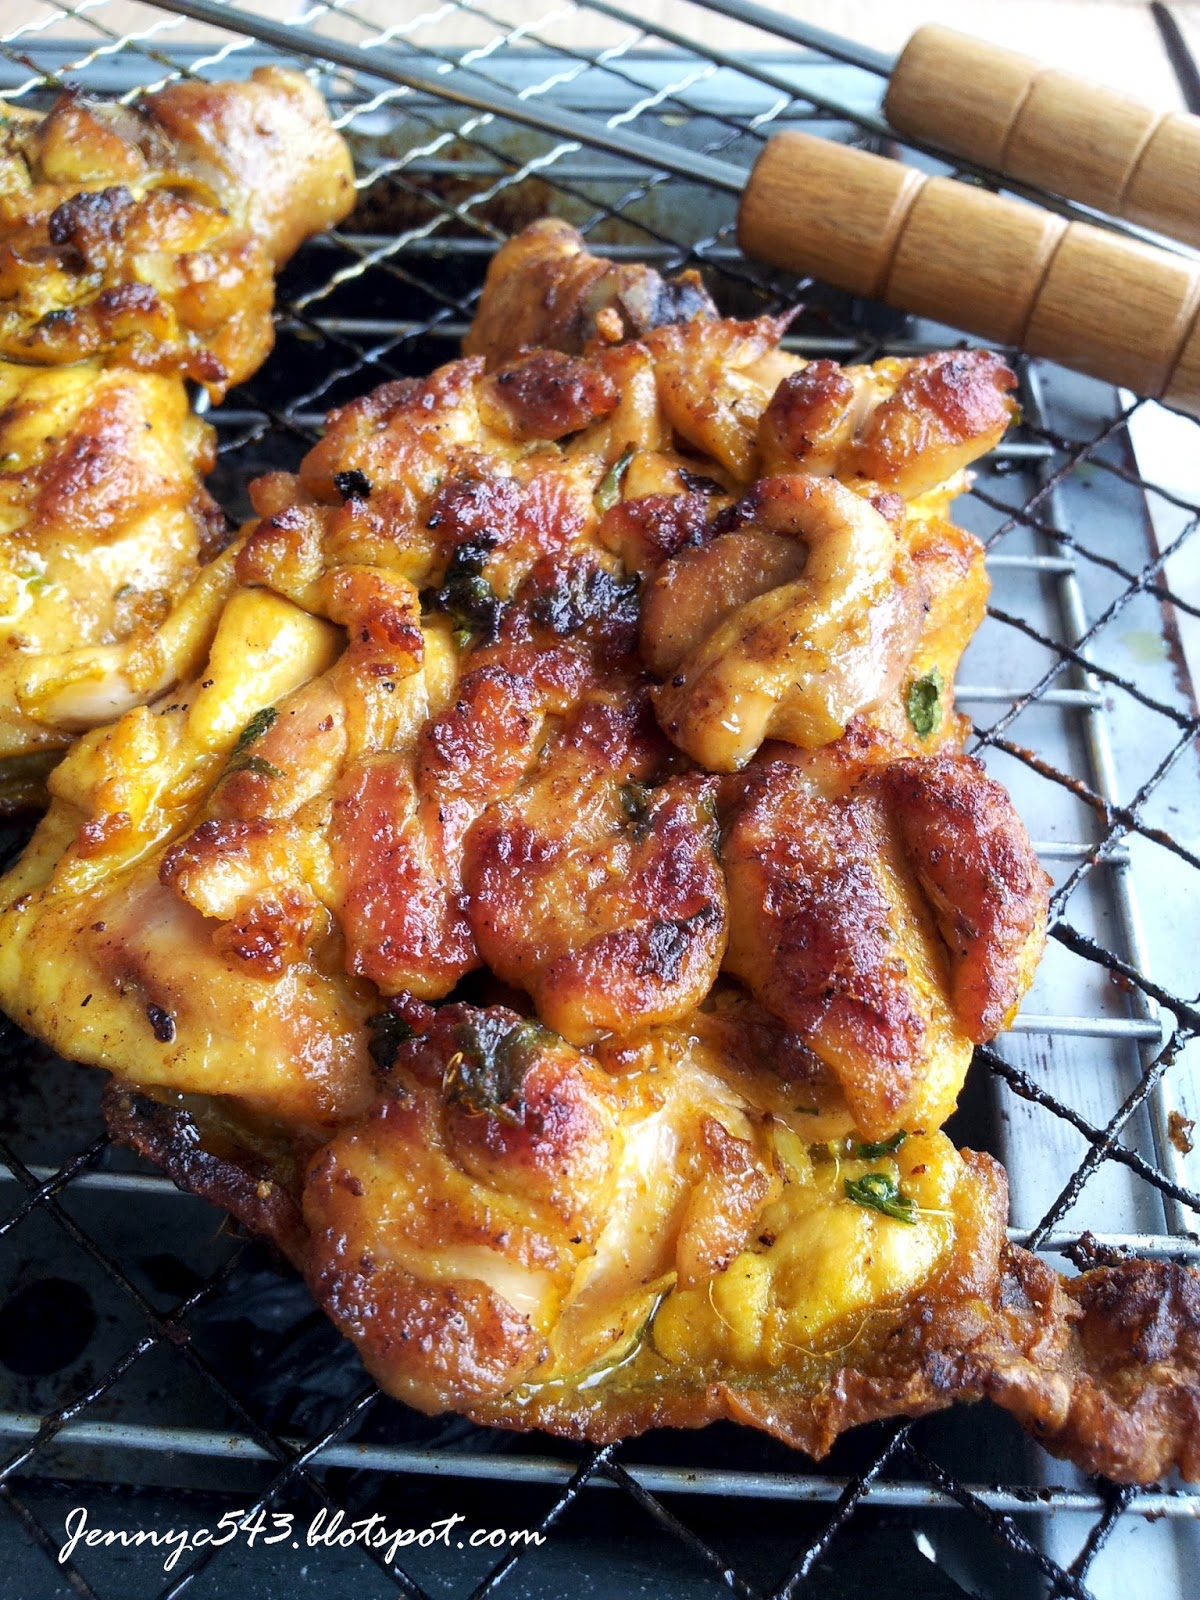 碳烤鸡 - 版纳告庄曼西贡餐厅东南亚米其林特色美食